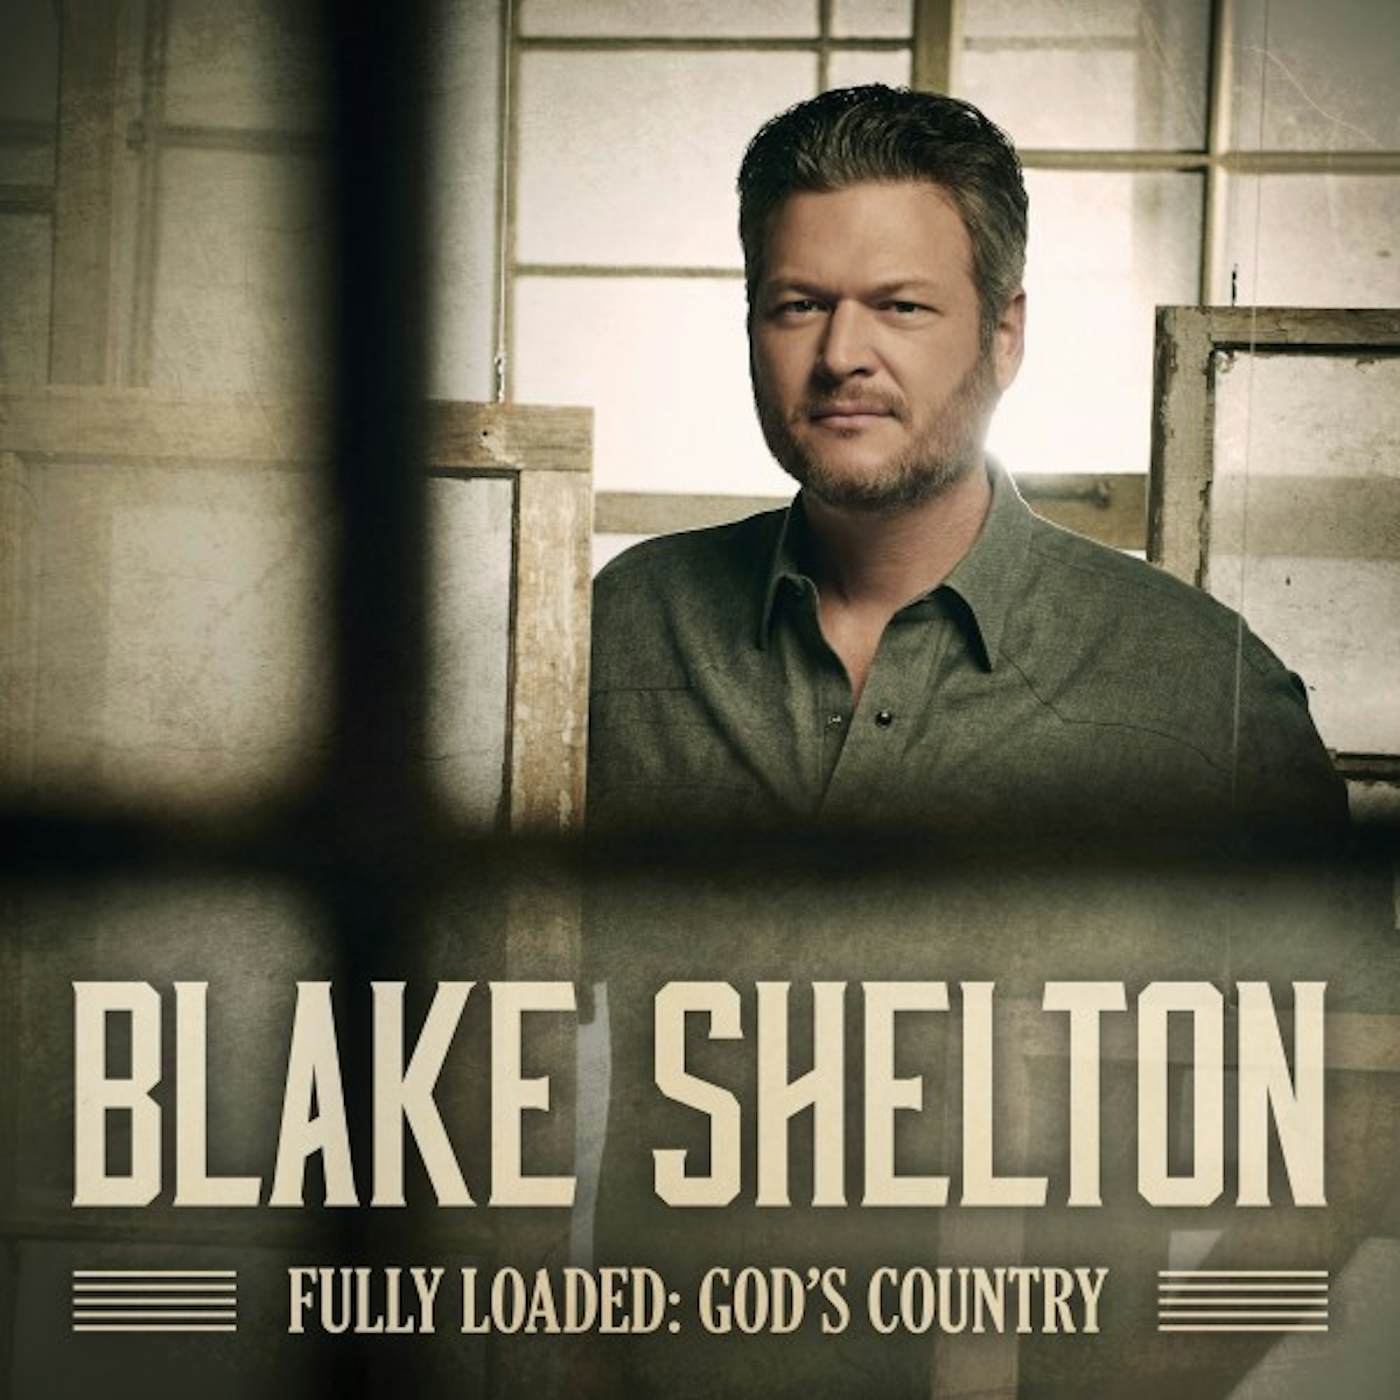 Blake Shelton FULLY LOADED: GOD'S COUNTRY CD